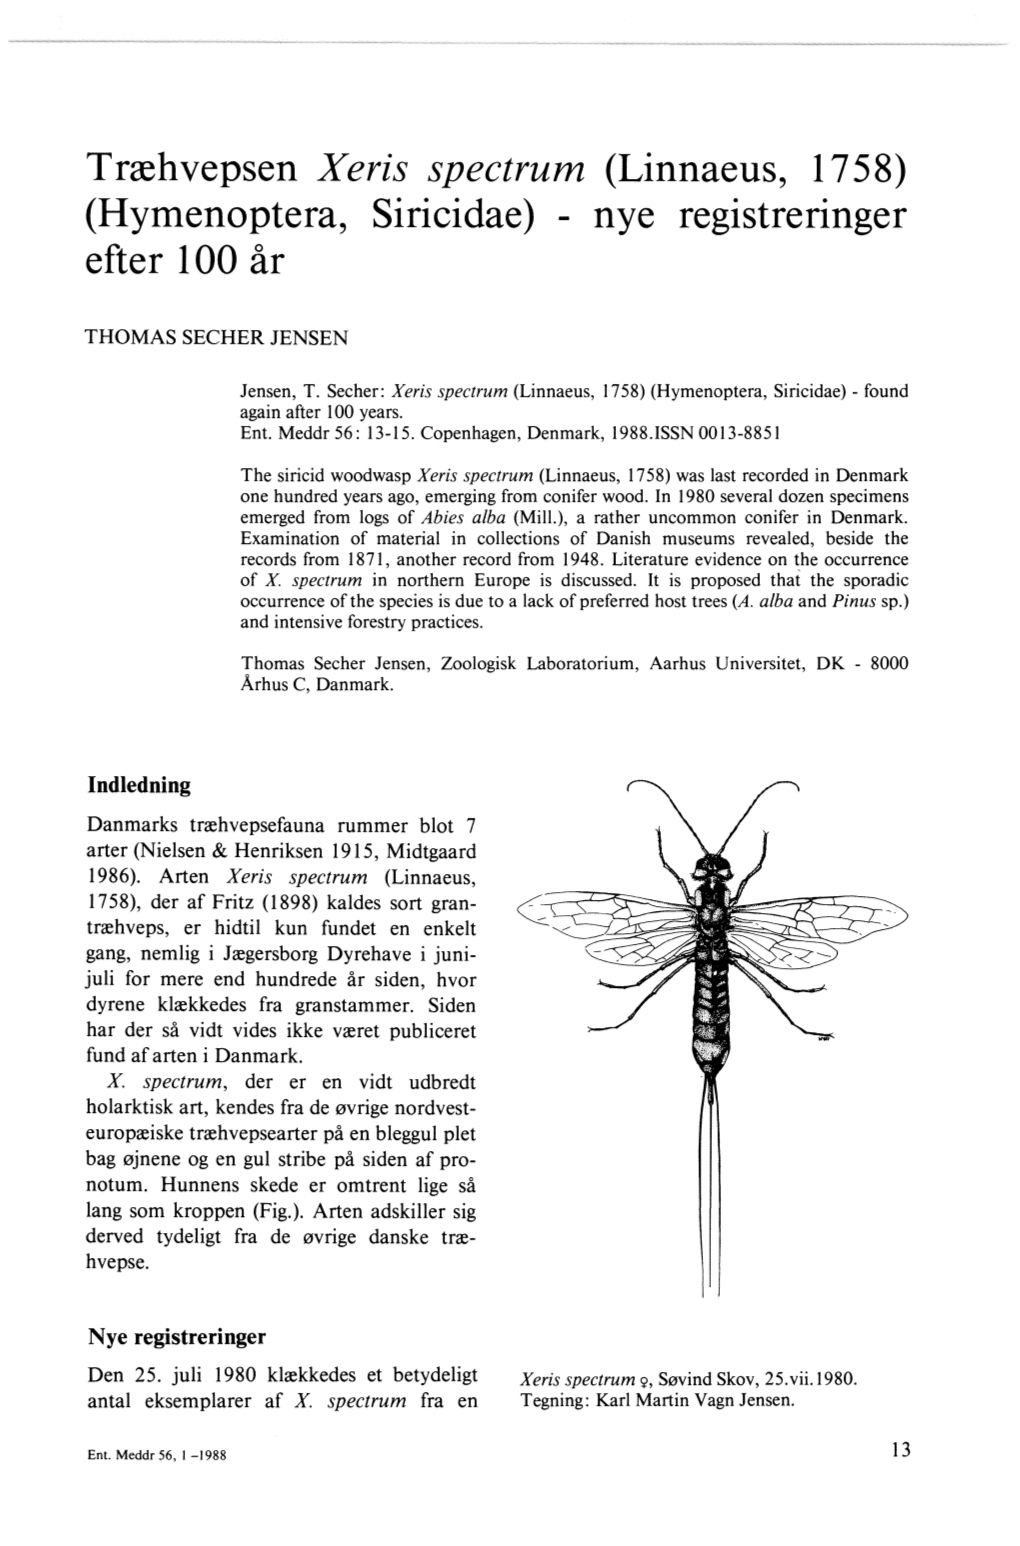 Hymenoptera, Siricidae) Nye Registreringer Efter 100 År